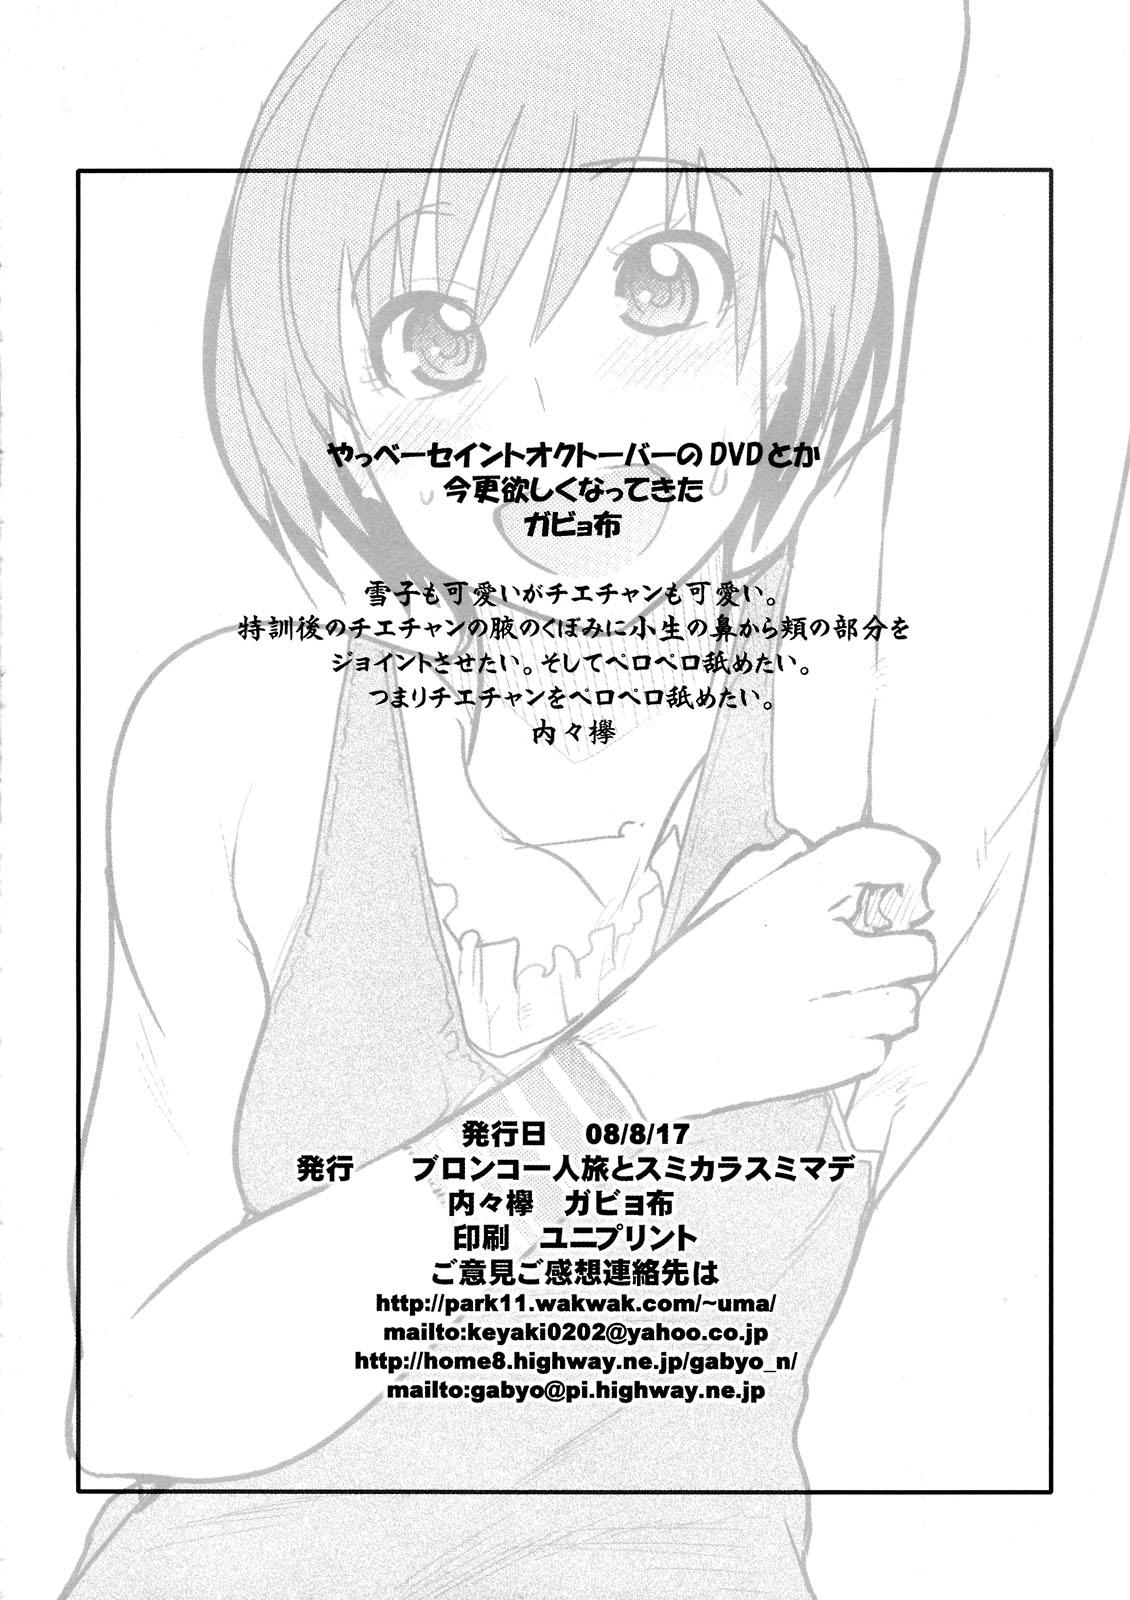 Sensual Gabyonuno to Uchi Uchi Keyaki no Suki Kaki Bon 08' Fuyu Michi naru pants o Yume ni Motomete Pawg - Page 14